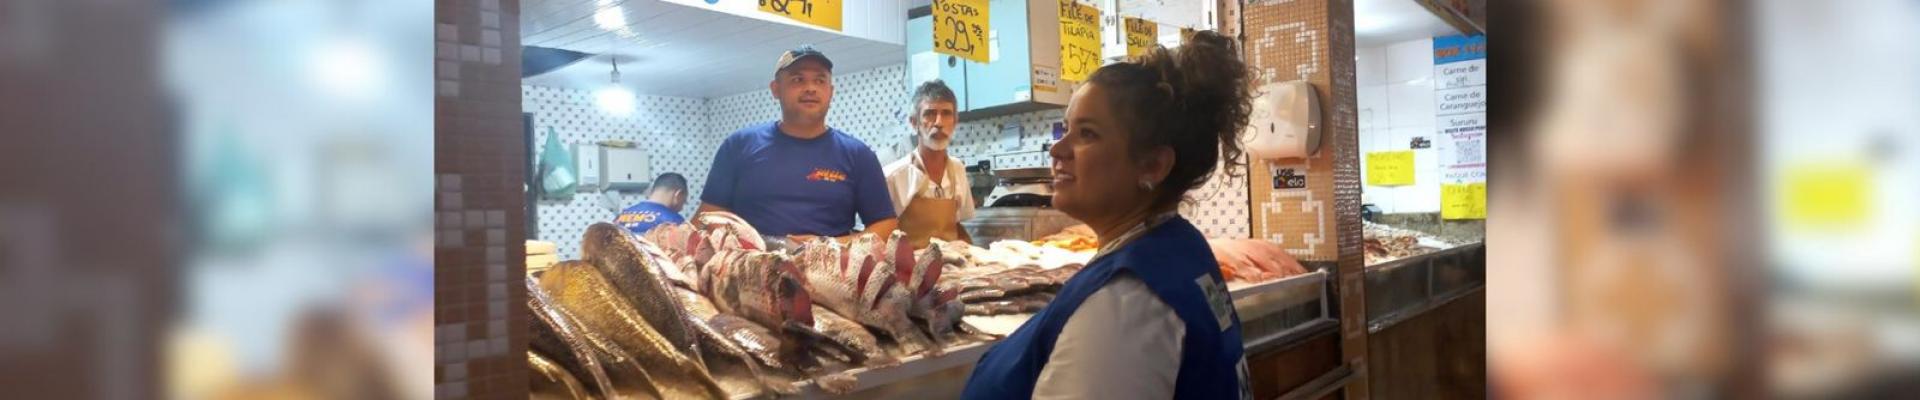 Fiperj dá dicas para escolher peixe de qualidade para Semana Santa